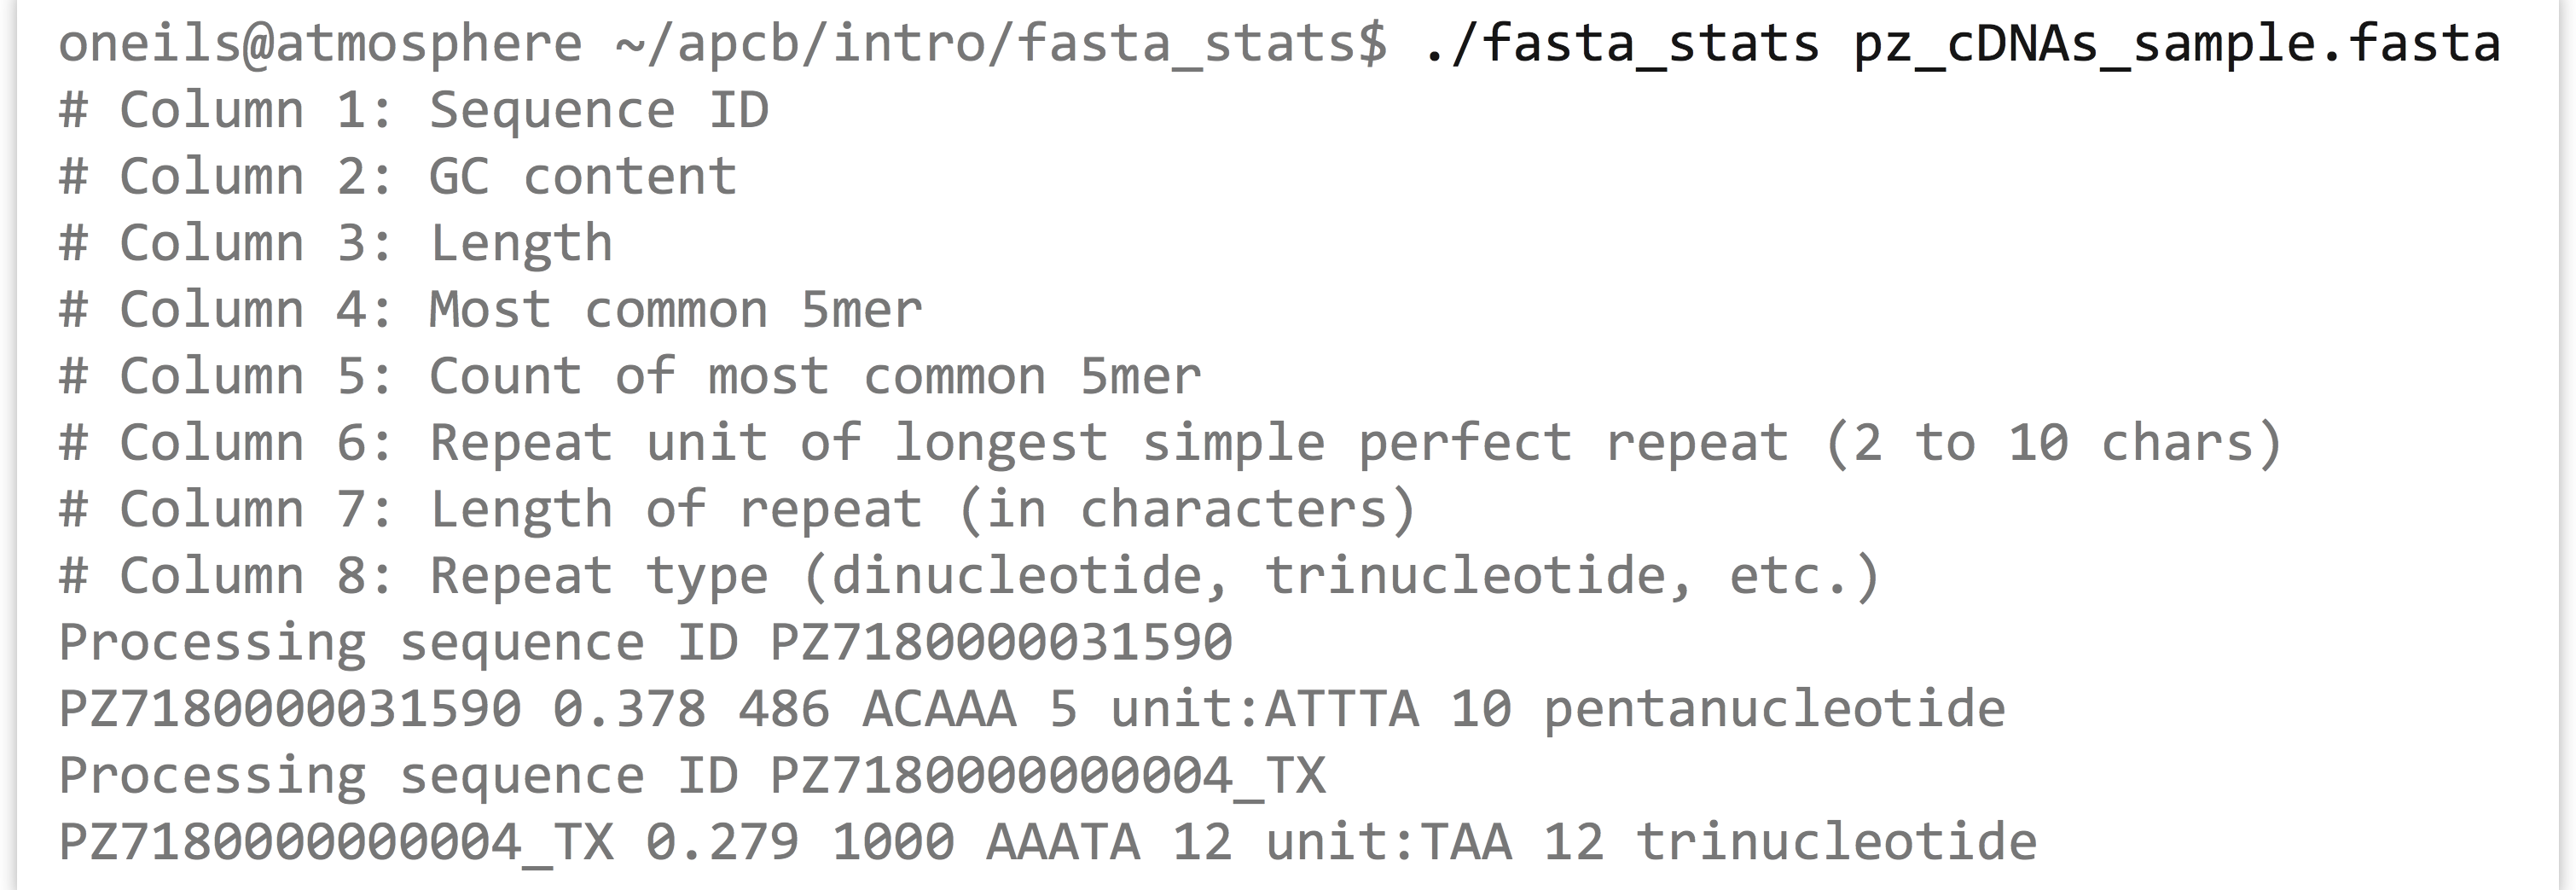 I.8_2_unix_96_fasta_stats_sample